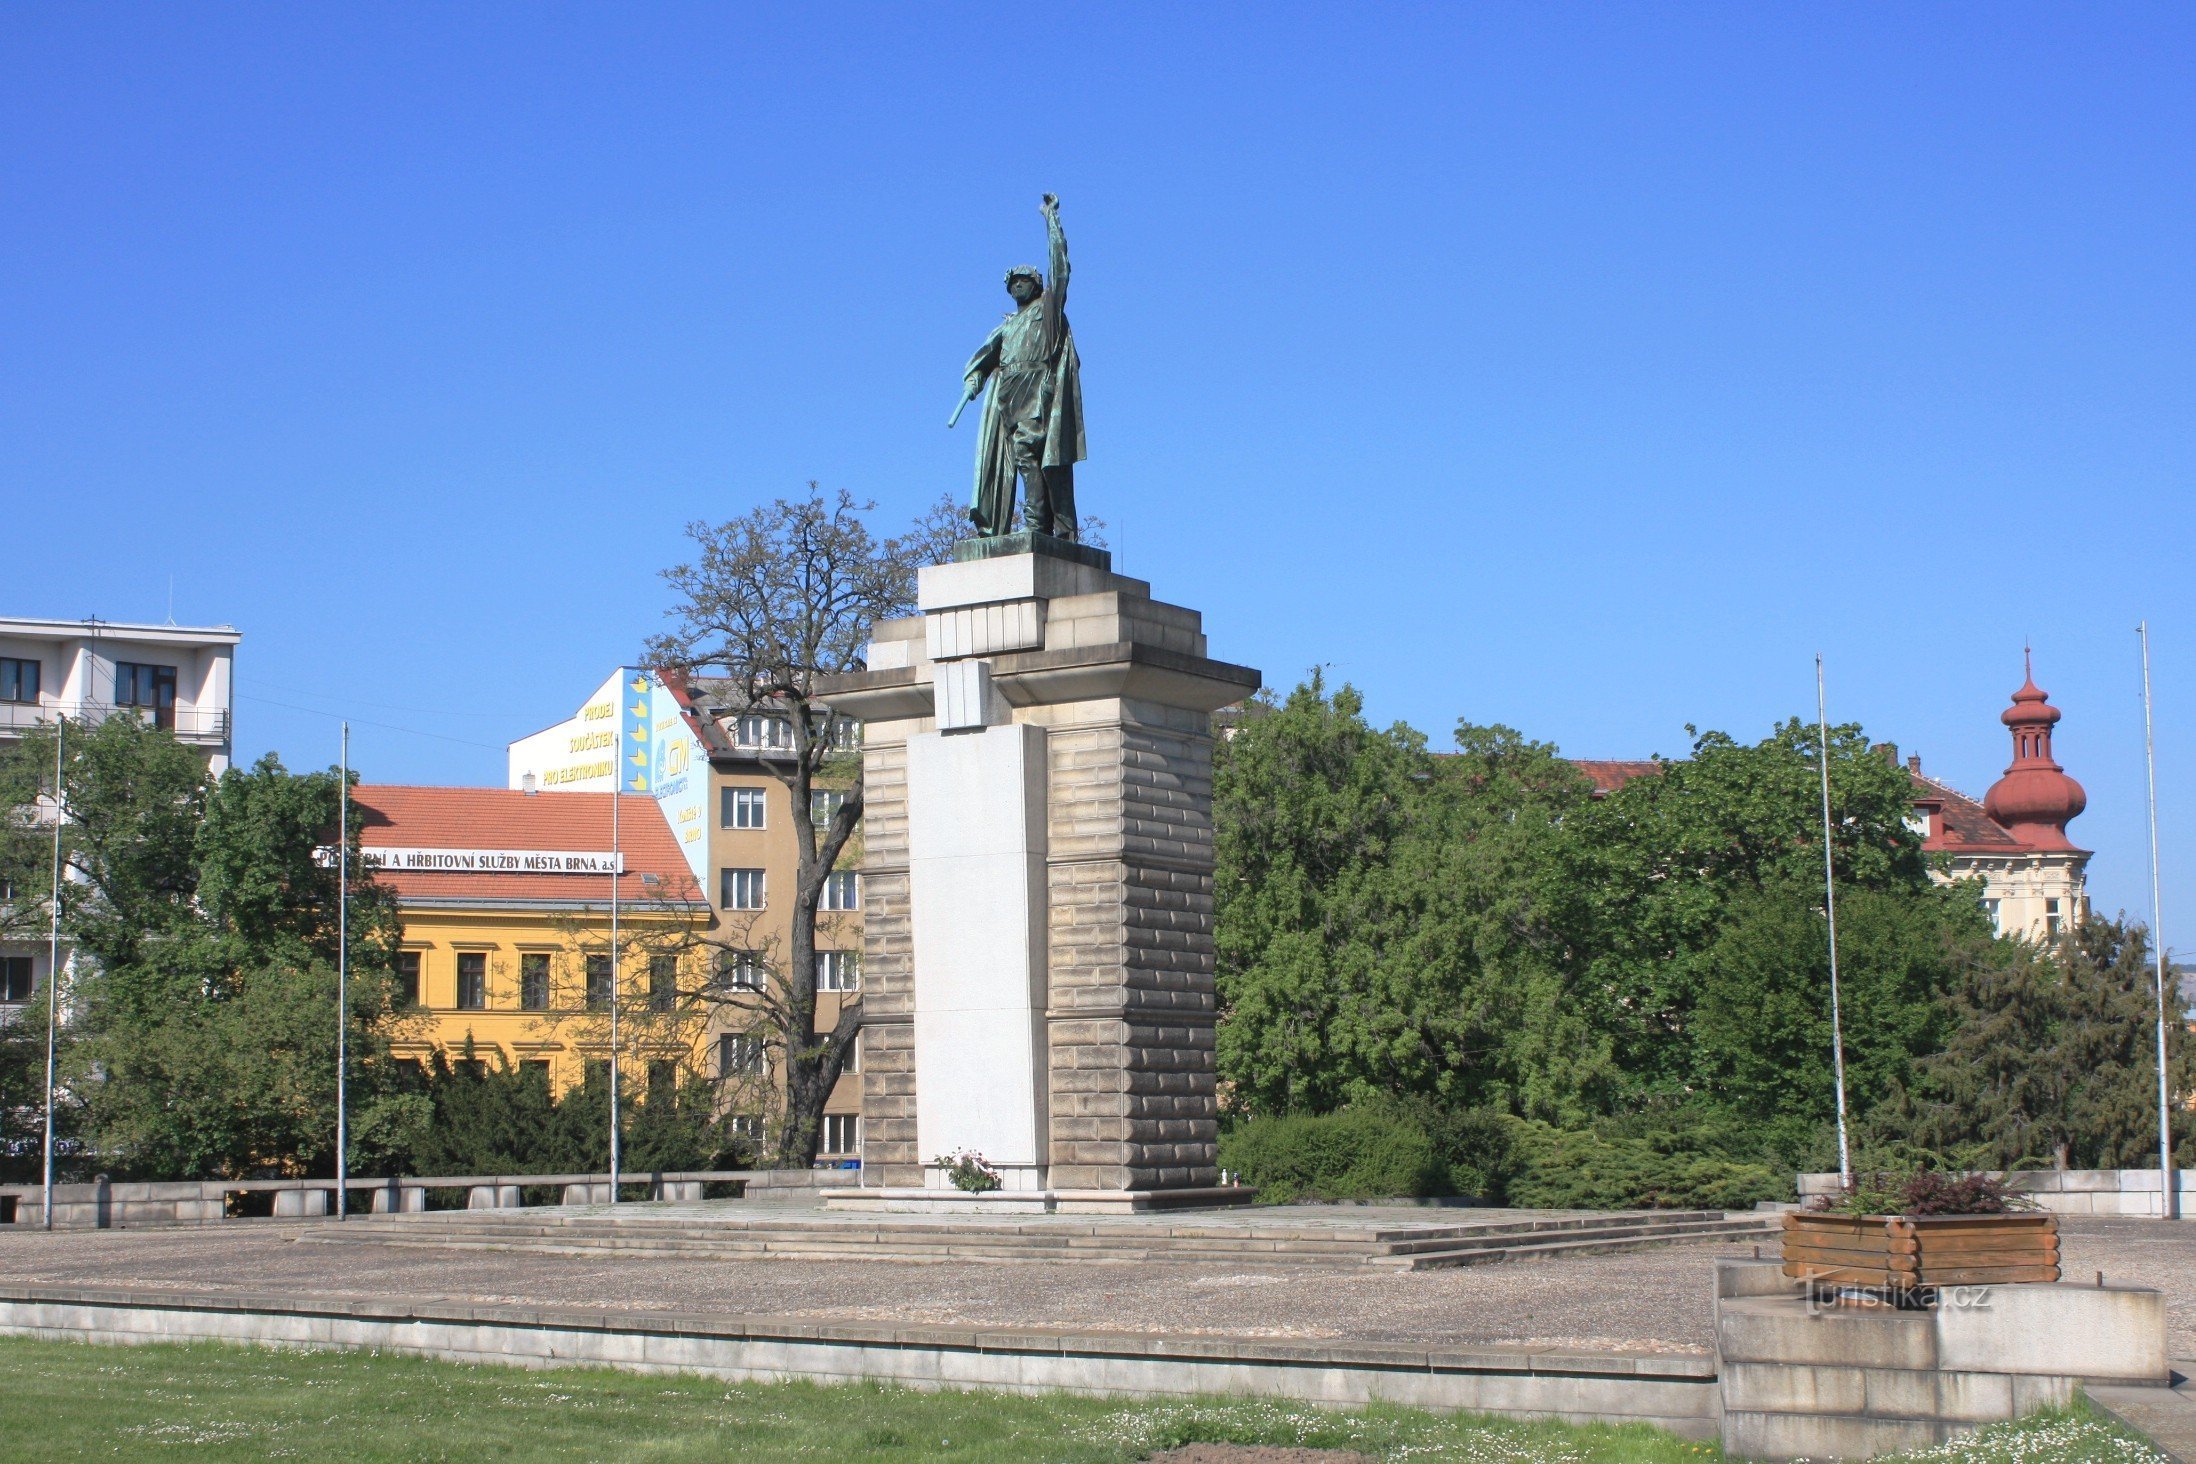 Moravské náměstí の赤軍記念碑 (2010 年 XNUMX 月)